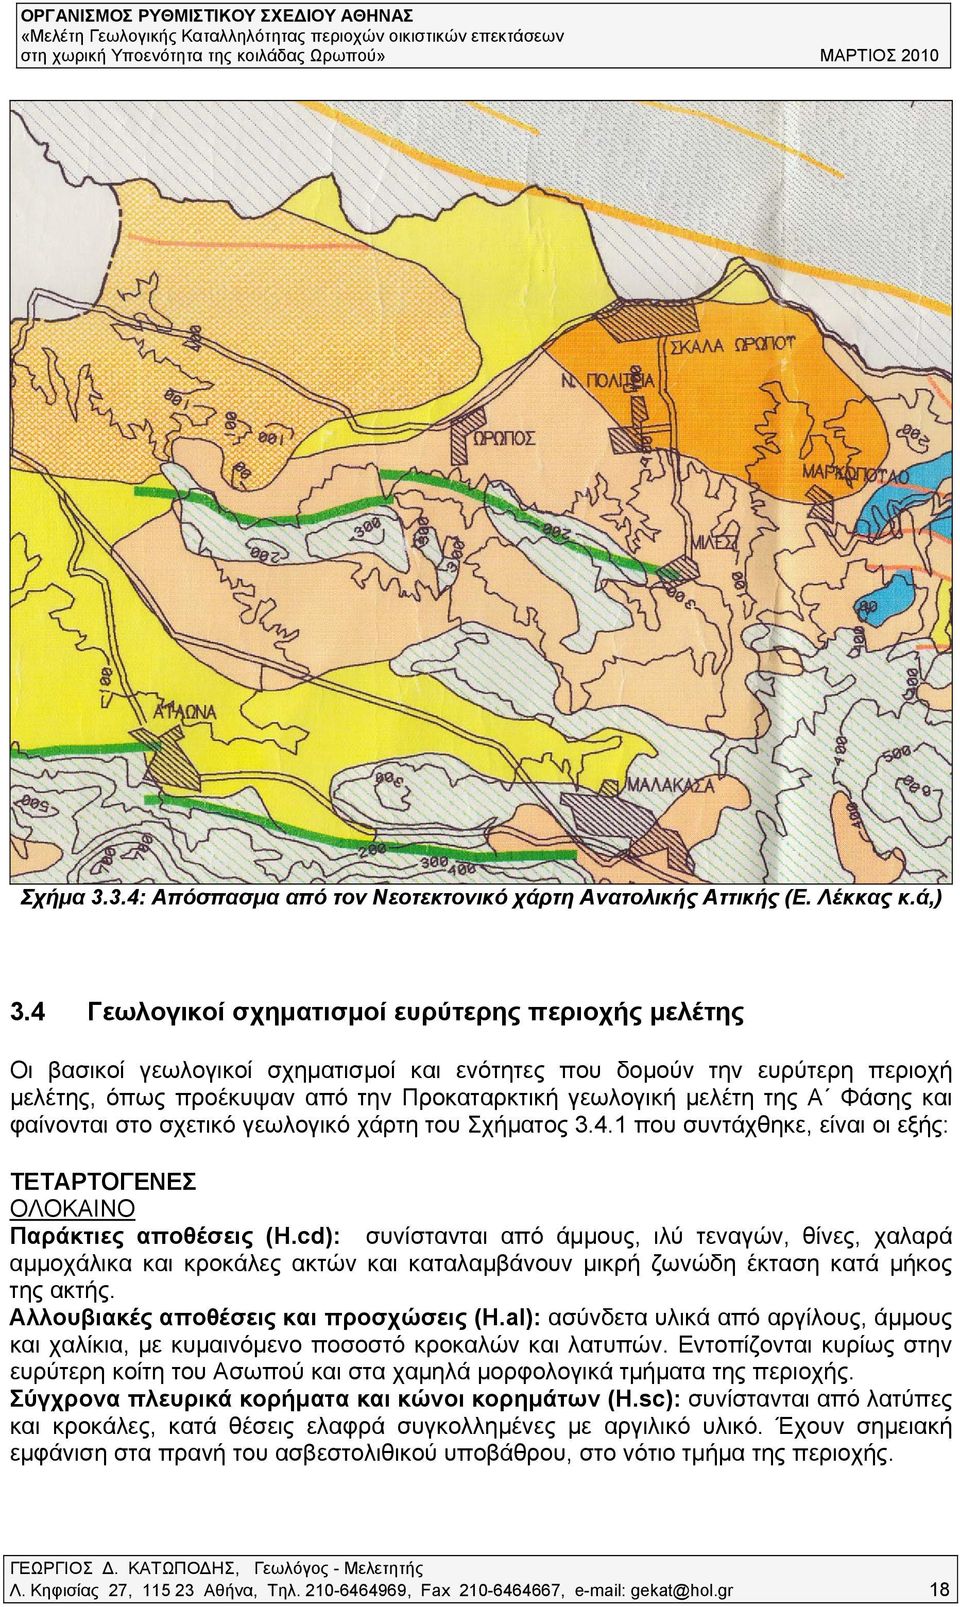 Φάσης και φαίνονται στο σχετικό γεωλογικό χάρτη του Σχήματος 3.4.1 που συντάχθηκε, είναι οι εξής: ΤΕΤΑΡΤΟΓΕΝΕΣ ΟΛΟΚΑΙΝΟ Παράκτιες αποθέσεις (H.